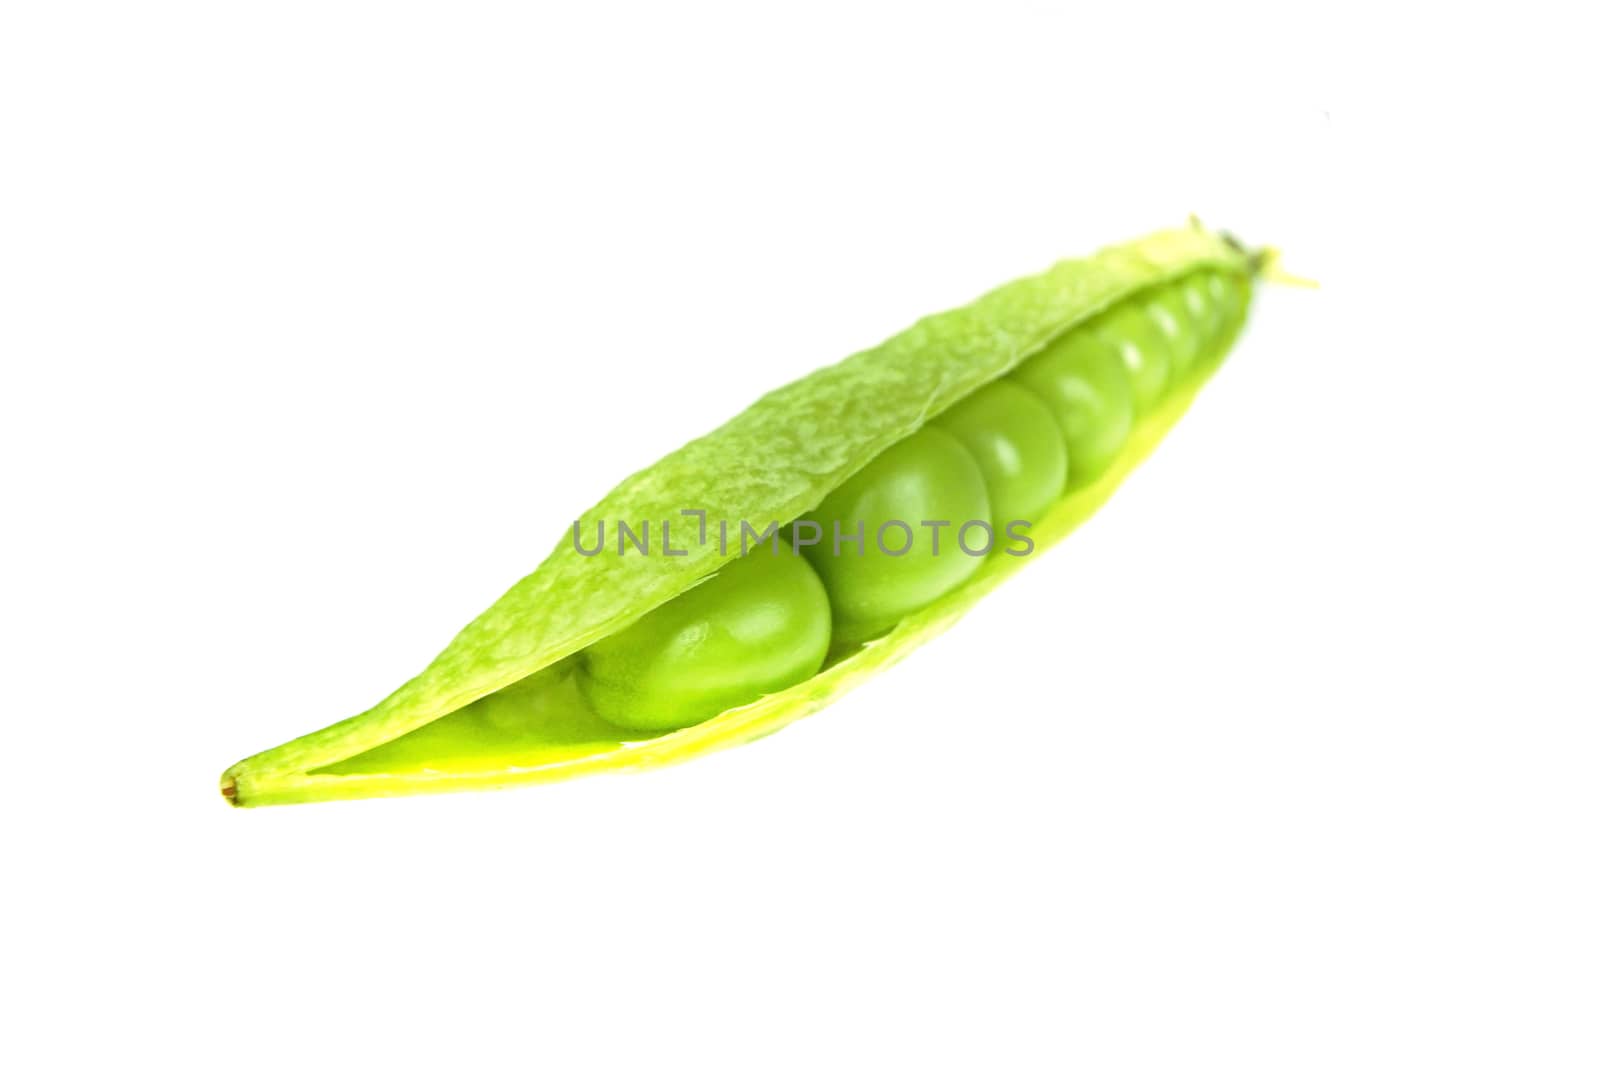 Snap peas, Pisum sativum var. macrocarpon also known as sugar snap peas, are a cultivar group of edible-podded peas.